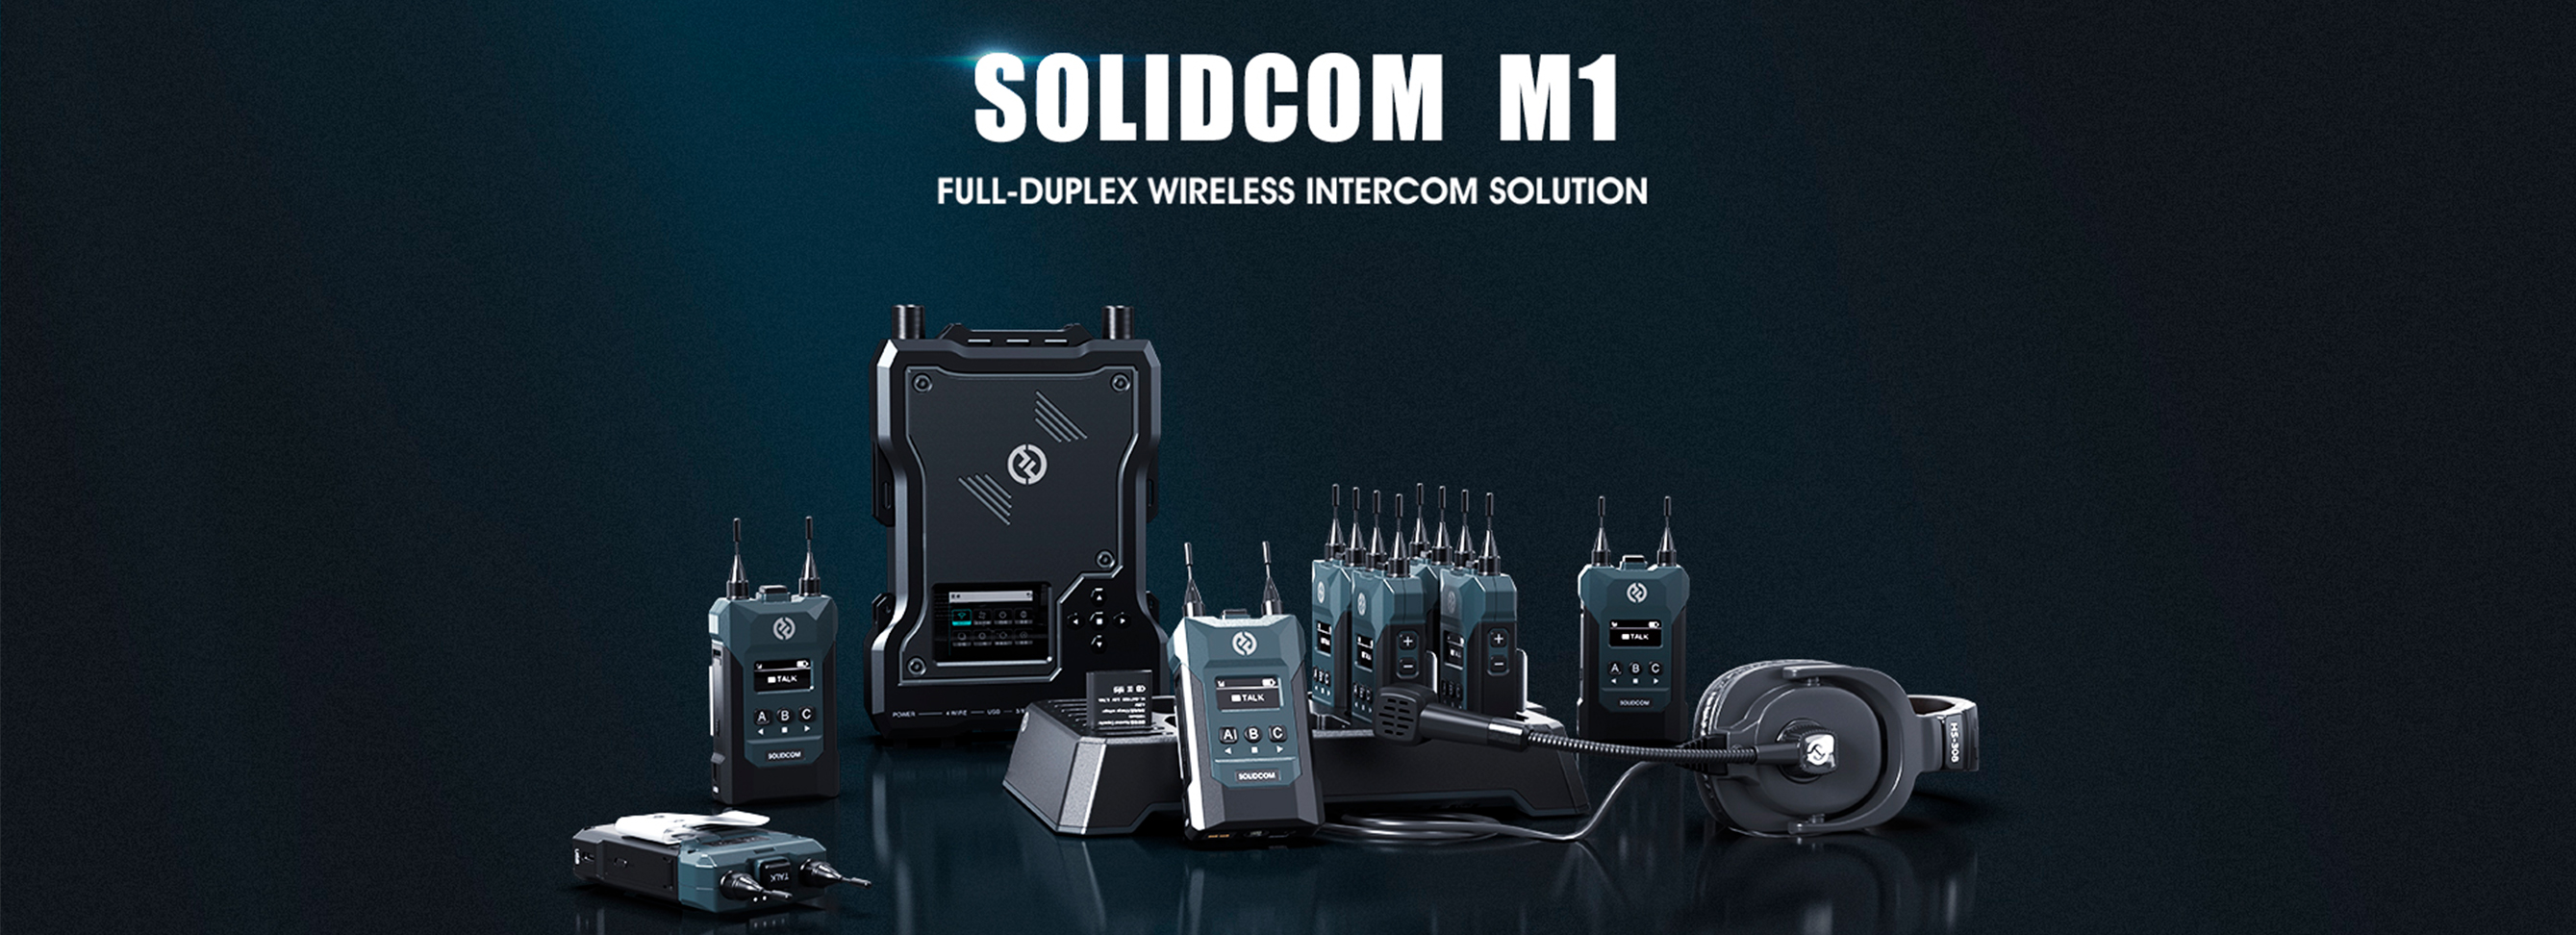 Solidcom m1